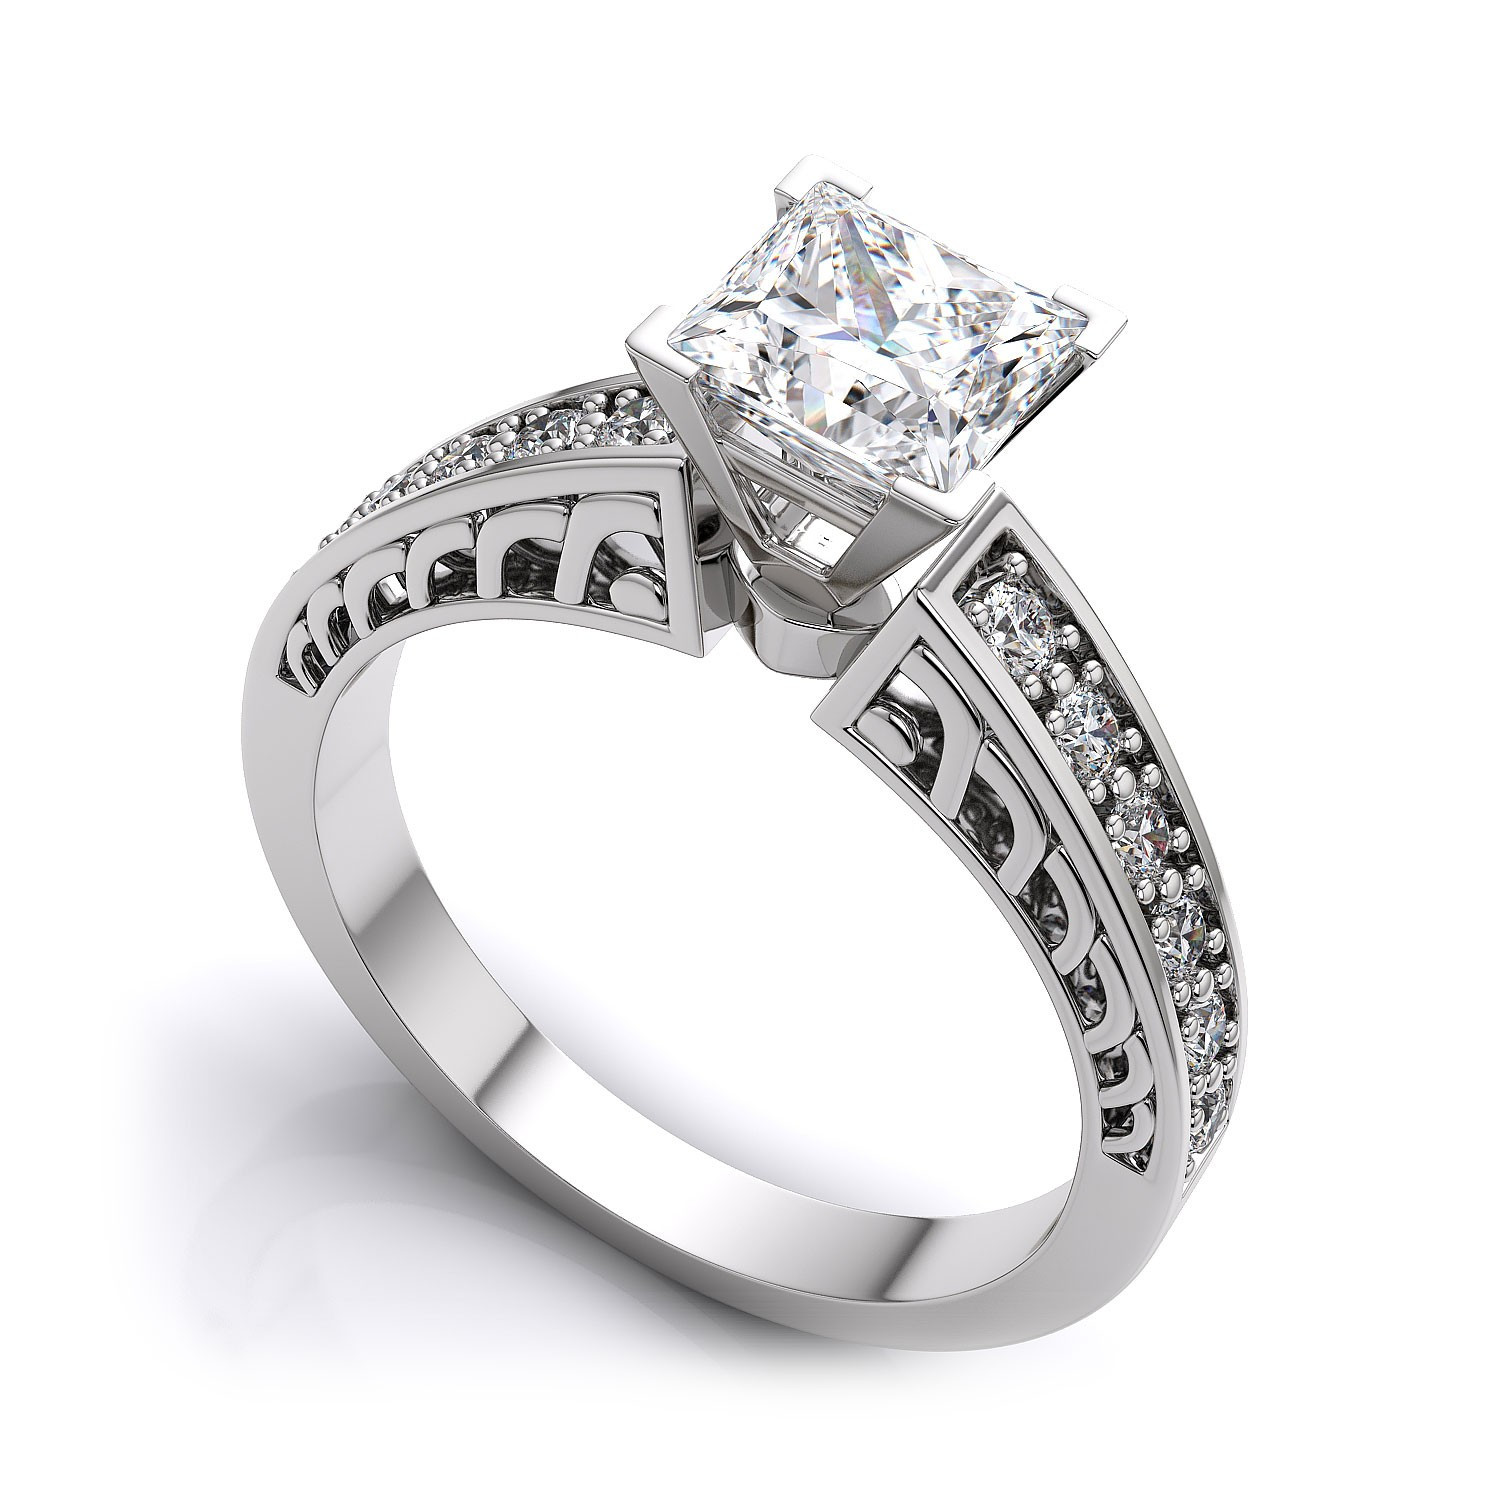 Antique Princess Cut Engagement Rings
 Vintage Princess Cut Diamond Engagement Rings